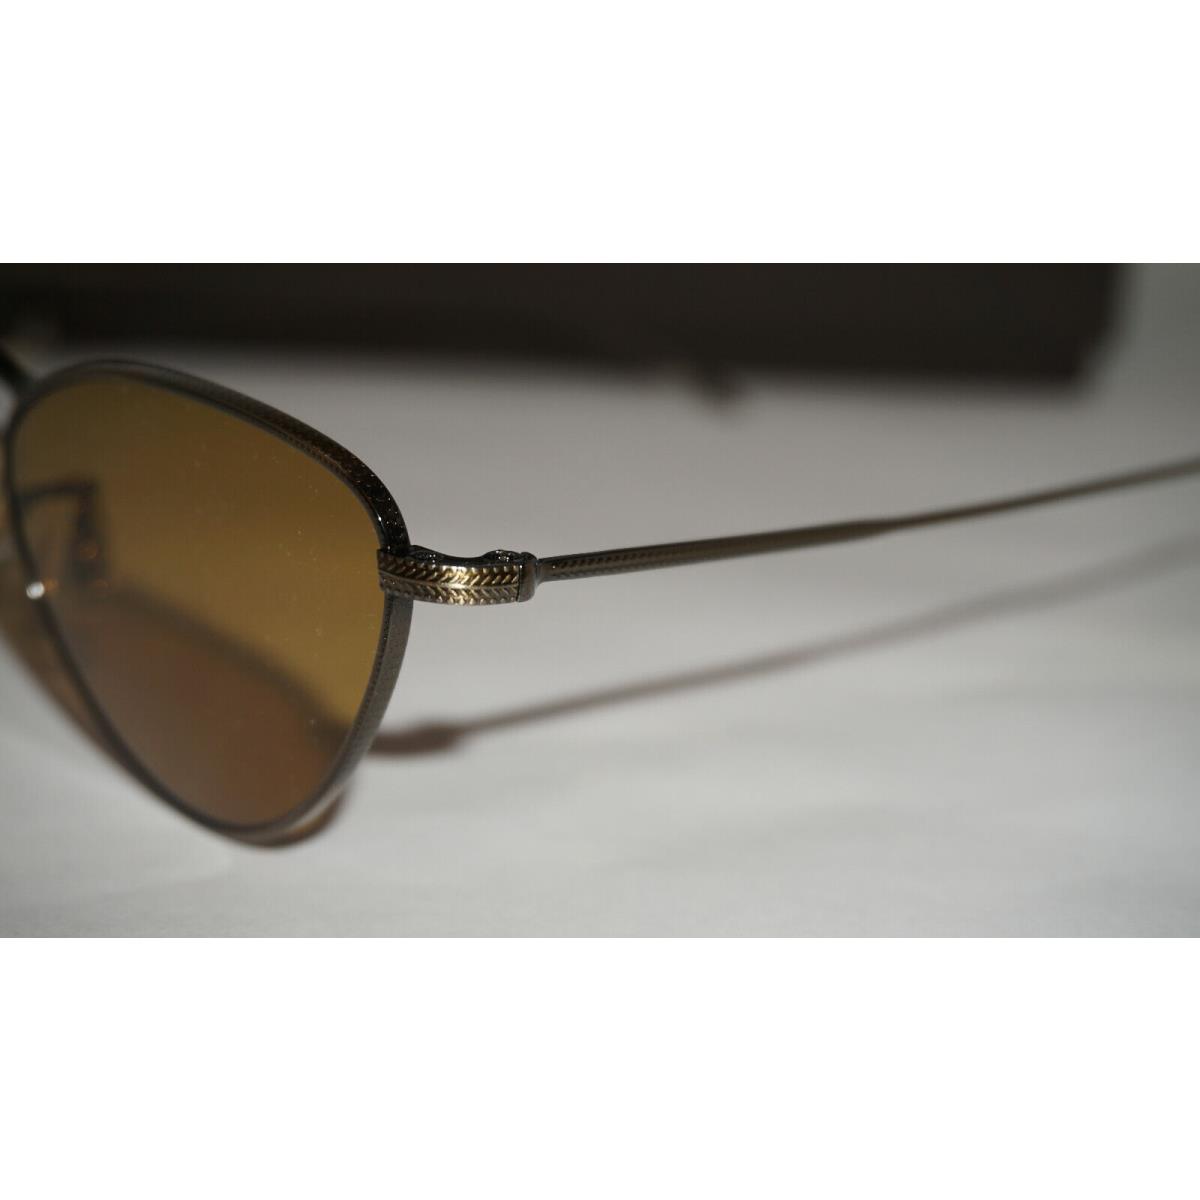 Oliver Peoples sunglasses  - Gold Frame, Brown Lens 2